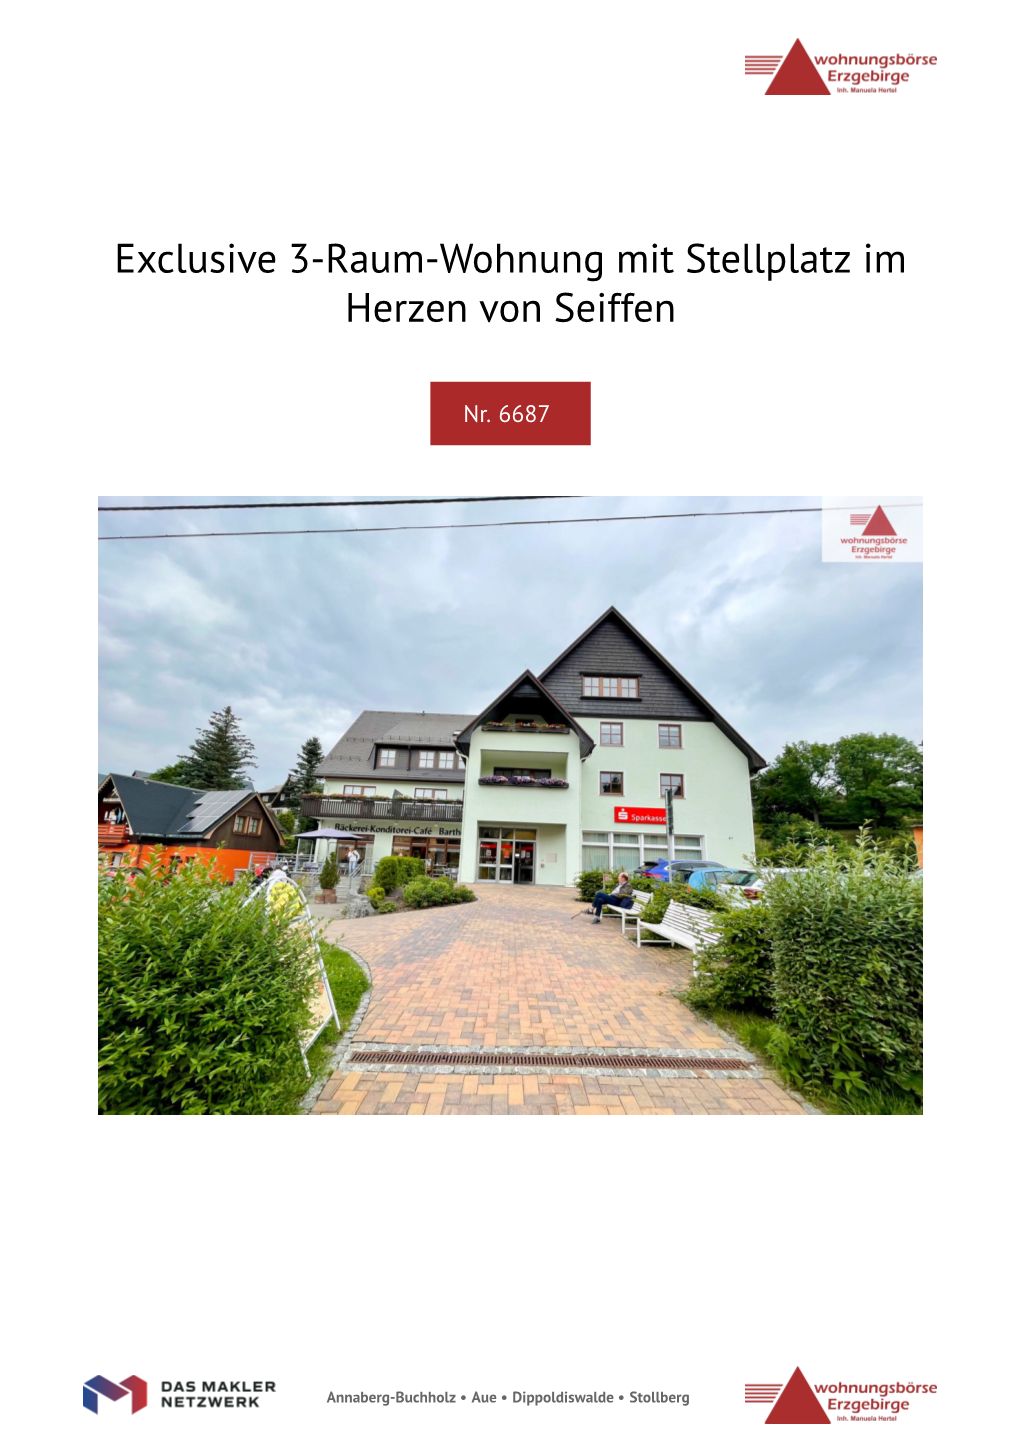 Exclusive 3-Raum-Wohnung Mit Stellplatz Im Herzen Von Seiffen